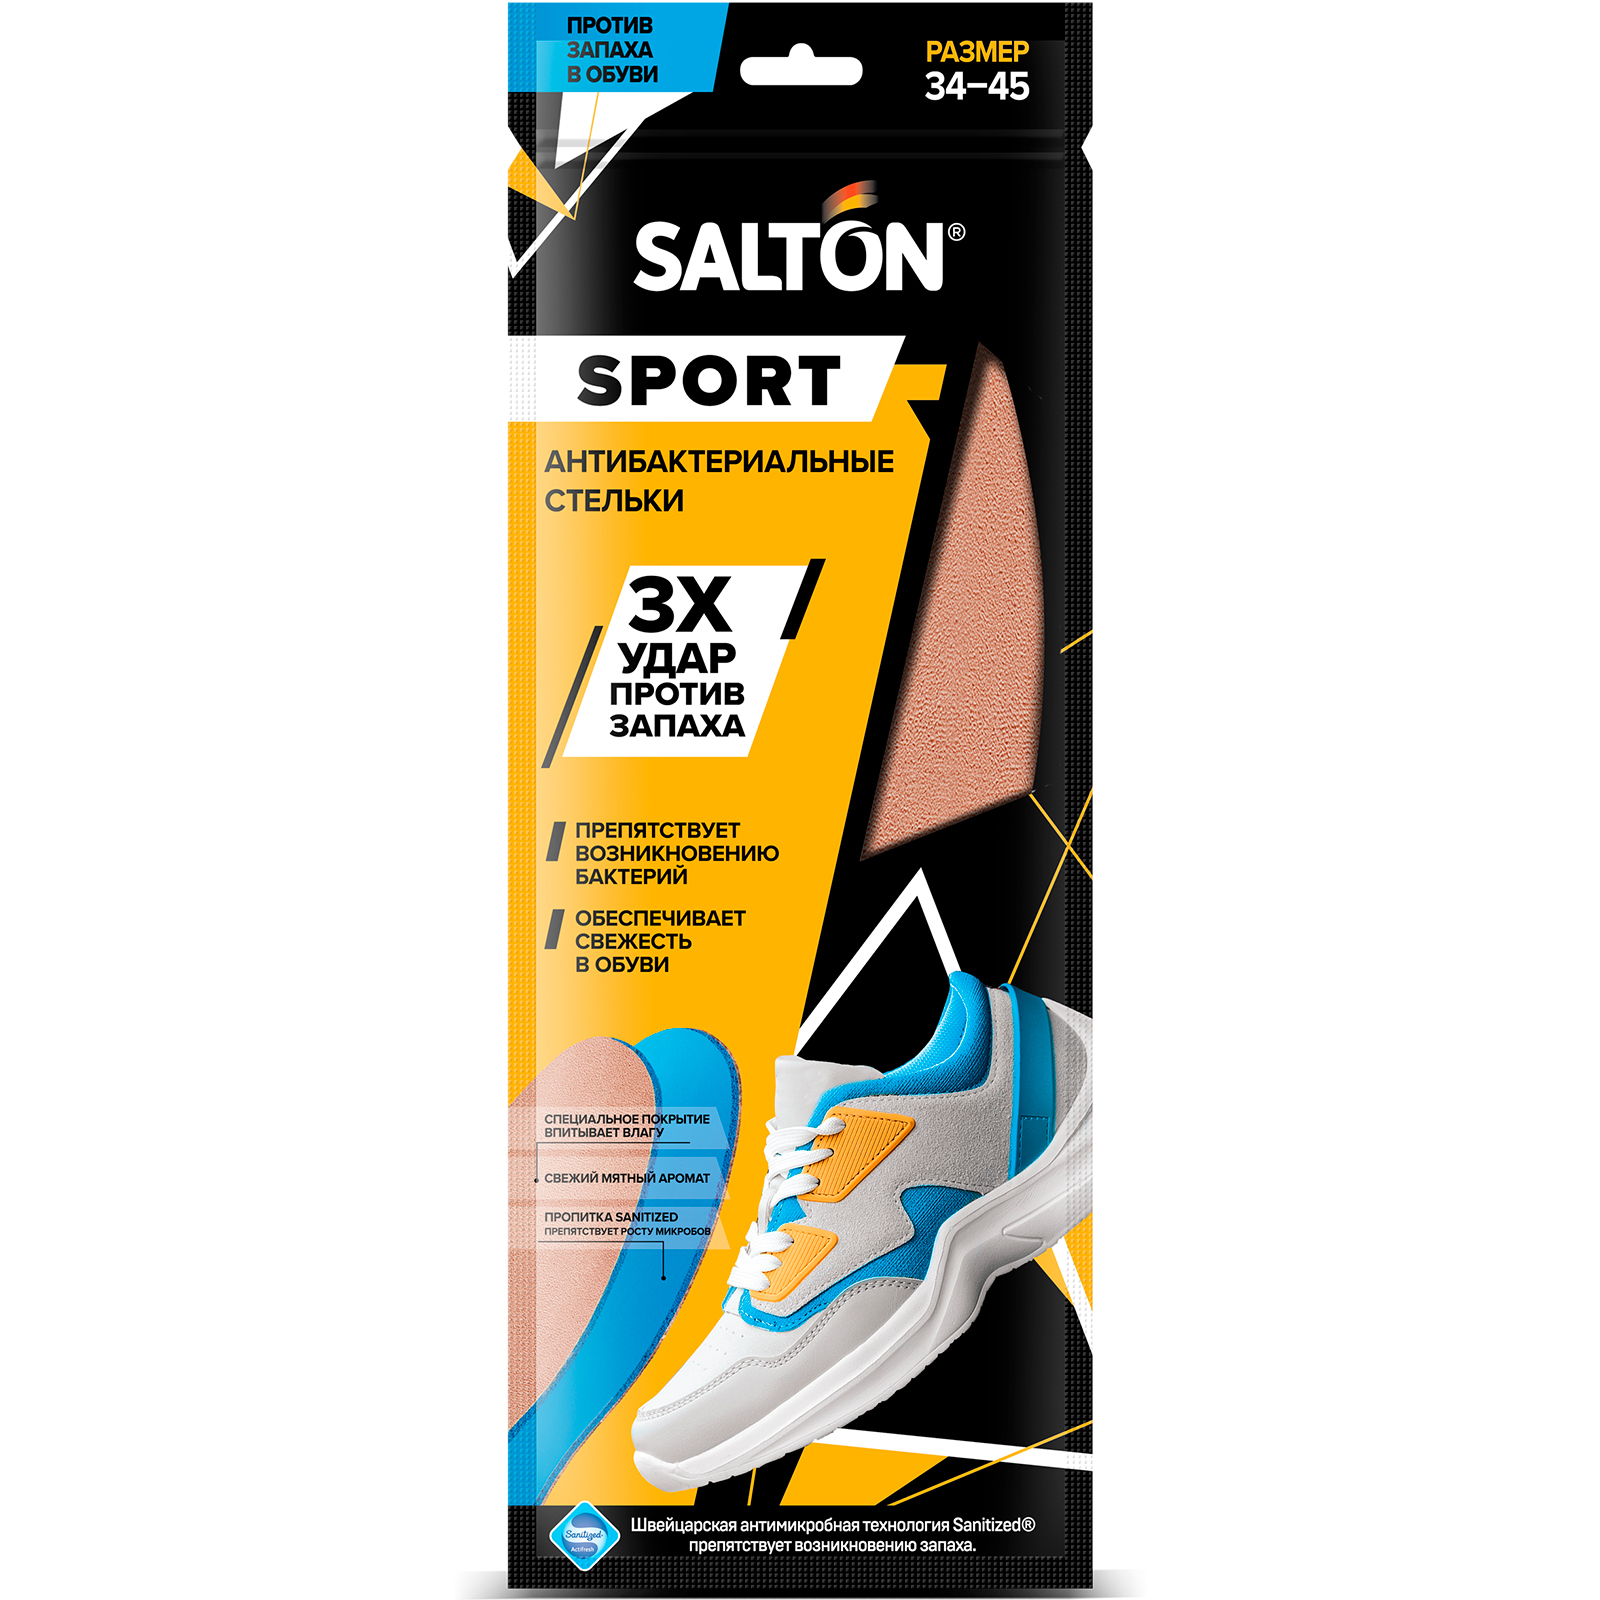 Стельки Salton Sport против запаха в спортивной обуви, антибактериальные, универсальные